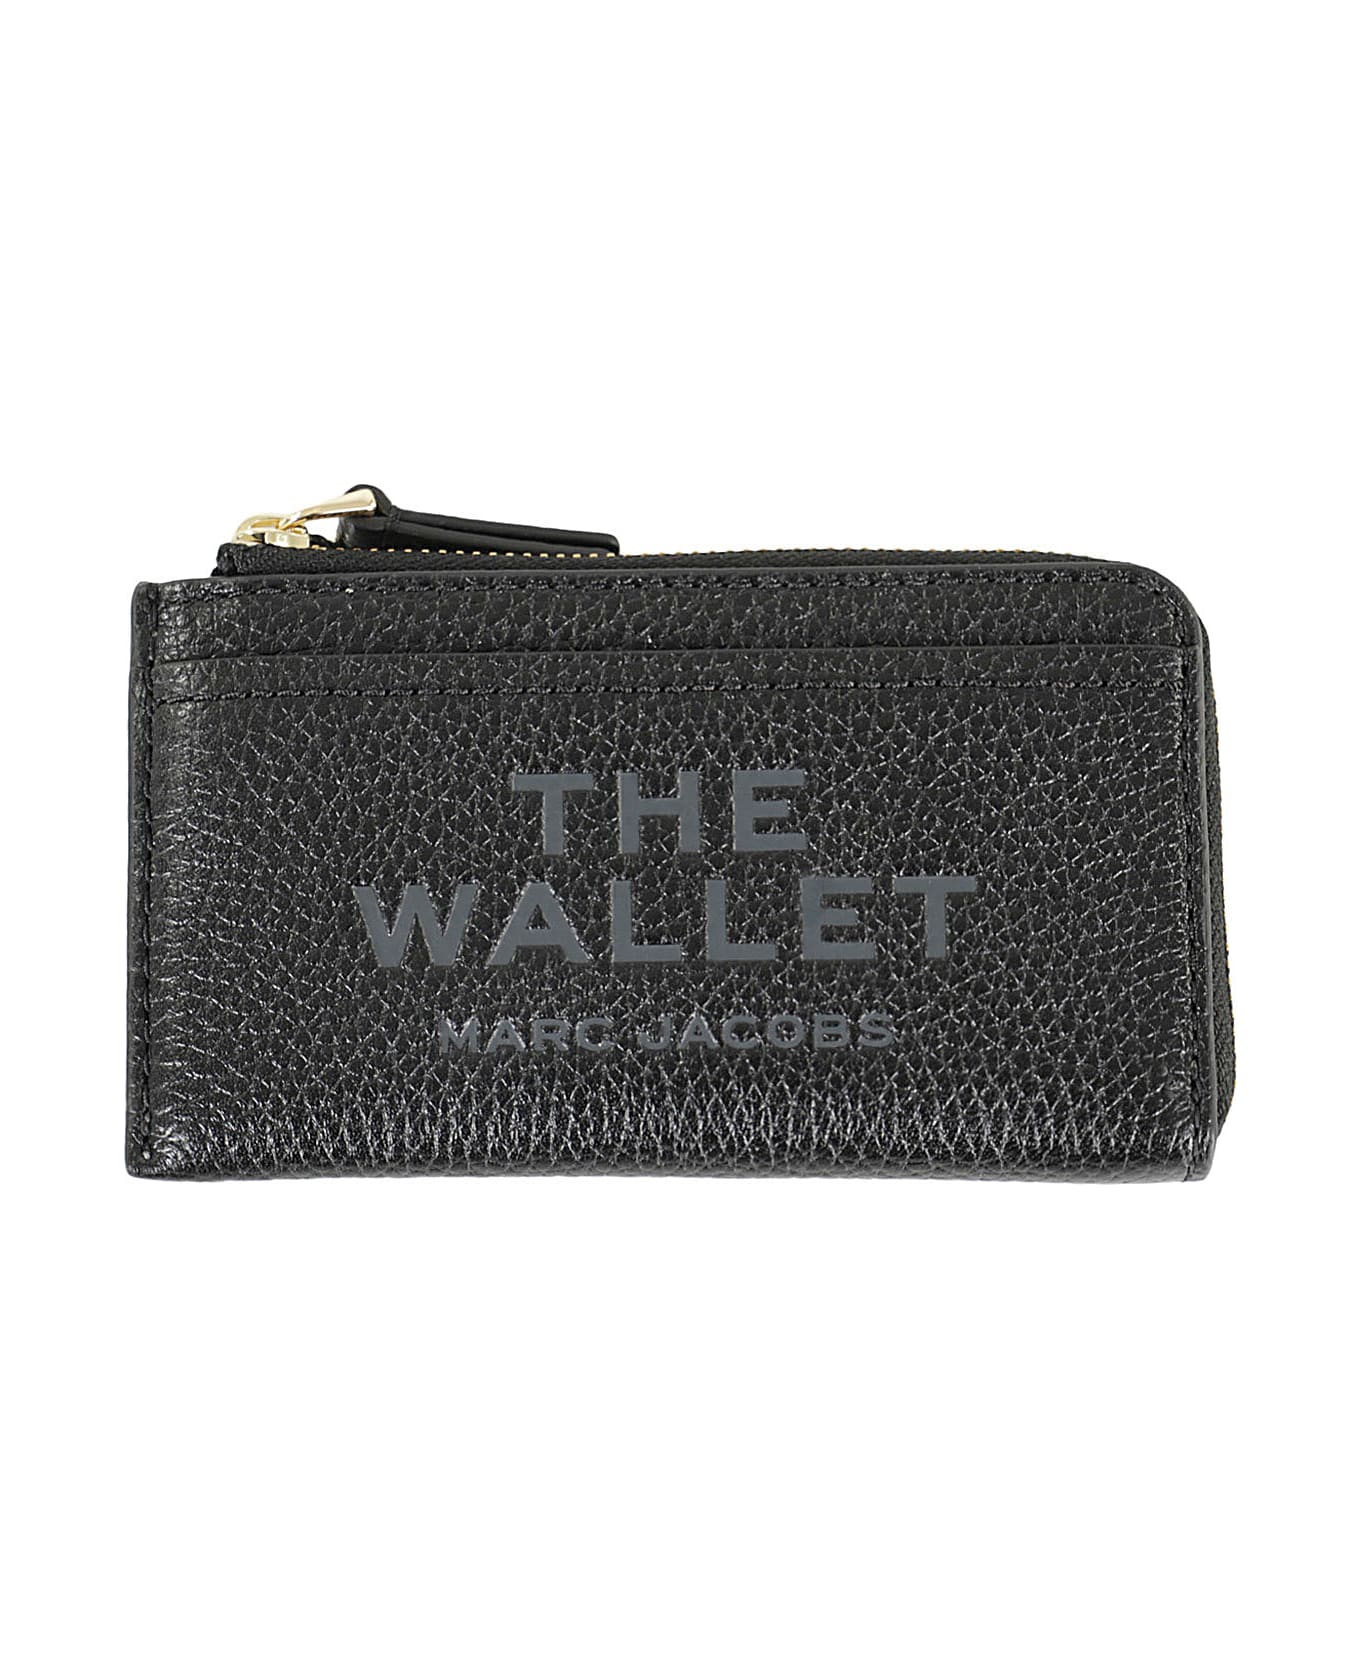 Marc Jacobs The Top Zip Multi Wallet